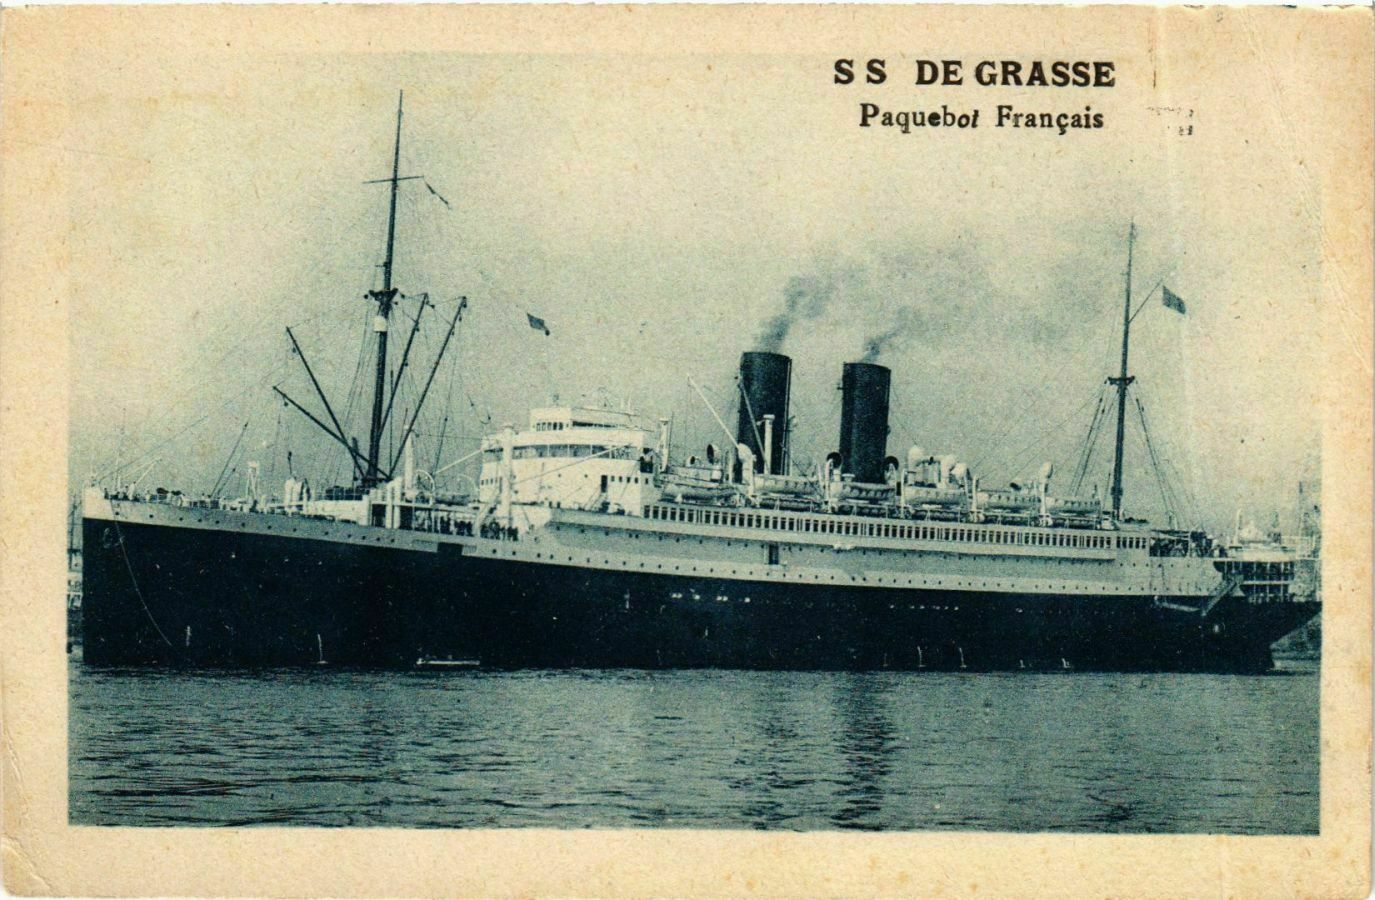 CPA AK S.S. De Grasse - French ship SHIPS (911651)